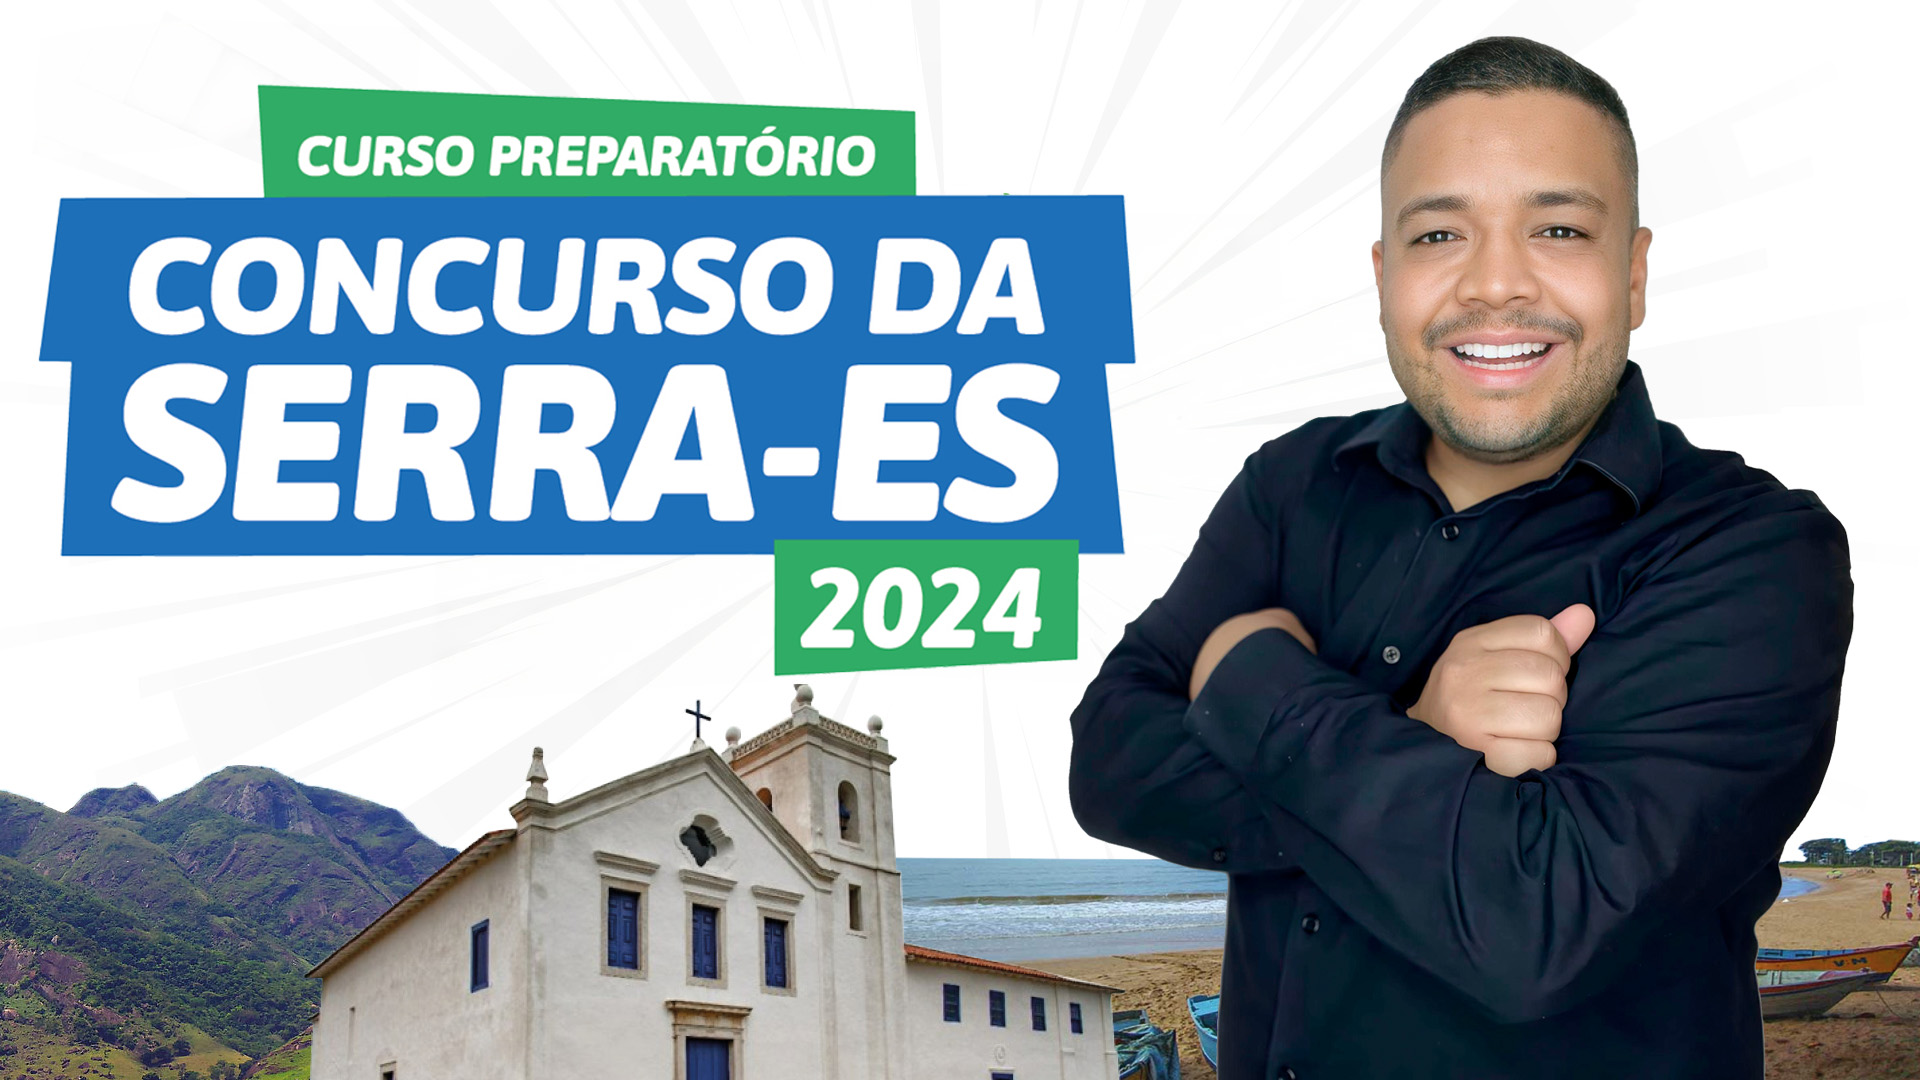 Concurso da Serra 2024